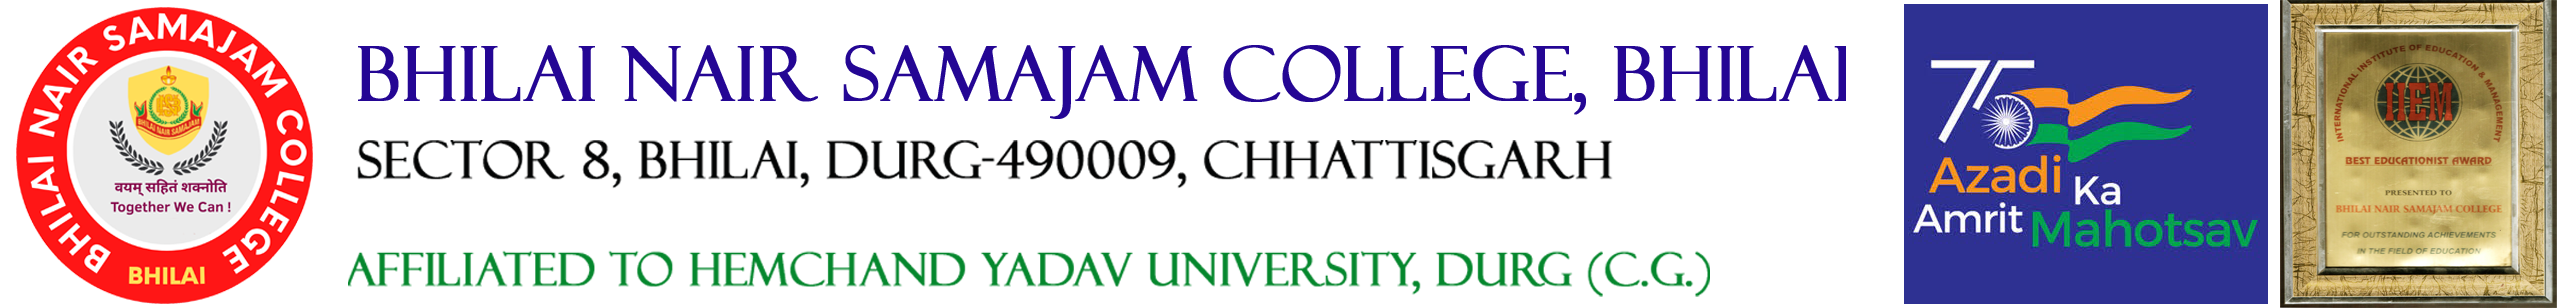 Powered by logo -Bhilai Nair Samajam College - Ravi Solutions